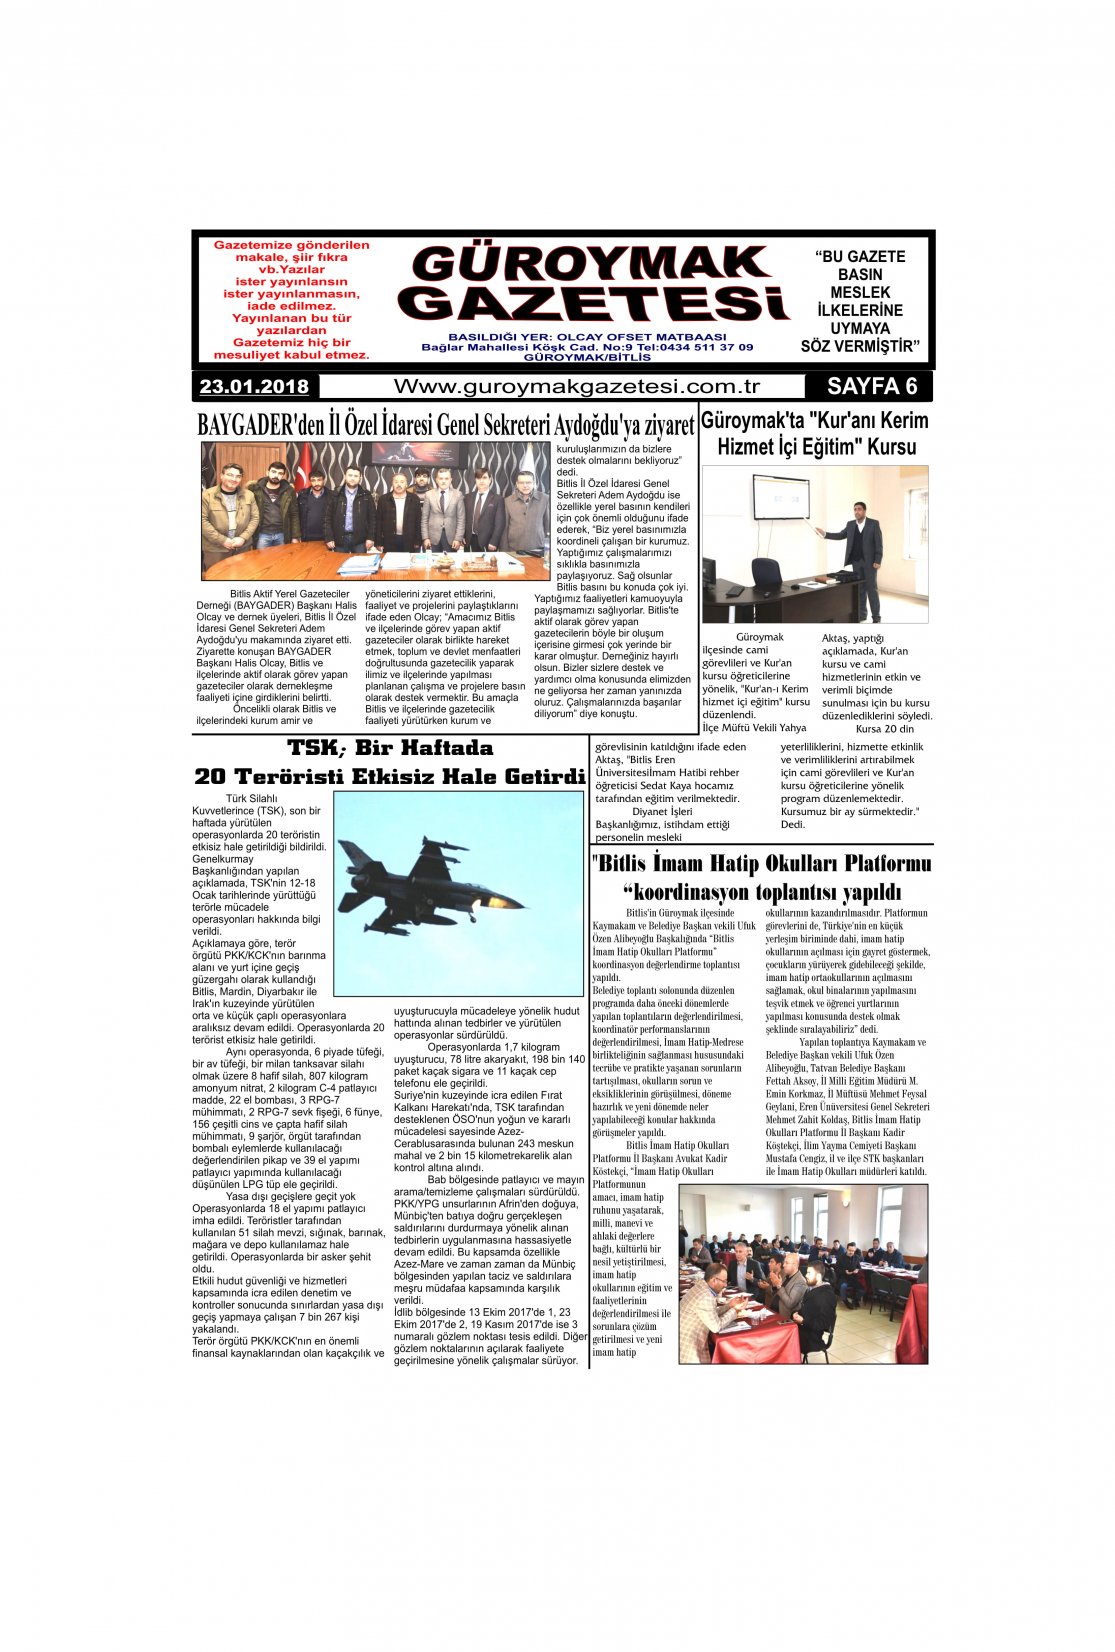 Güroymak Gazetesi 6-1.jpg Sayılı Gazete Küpürü